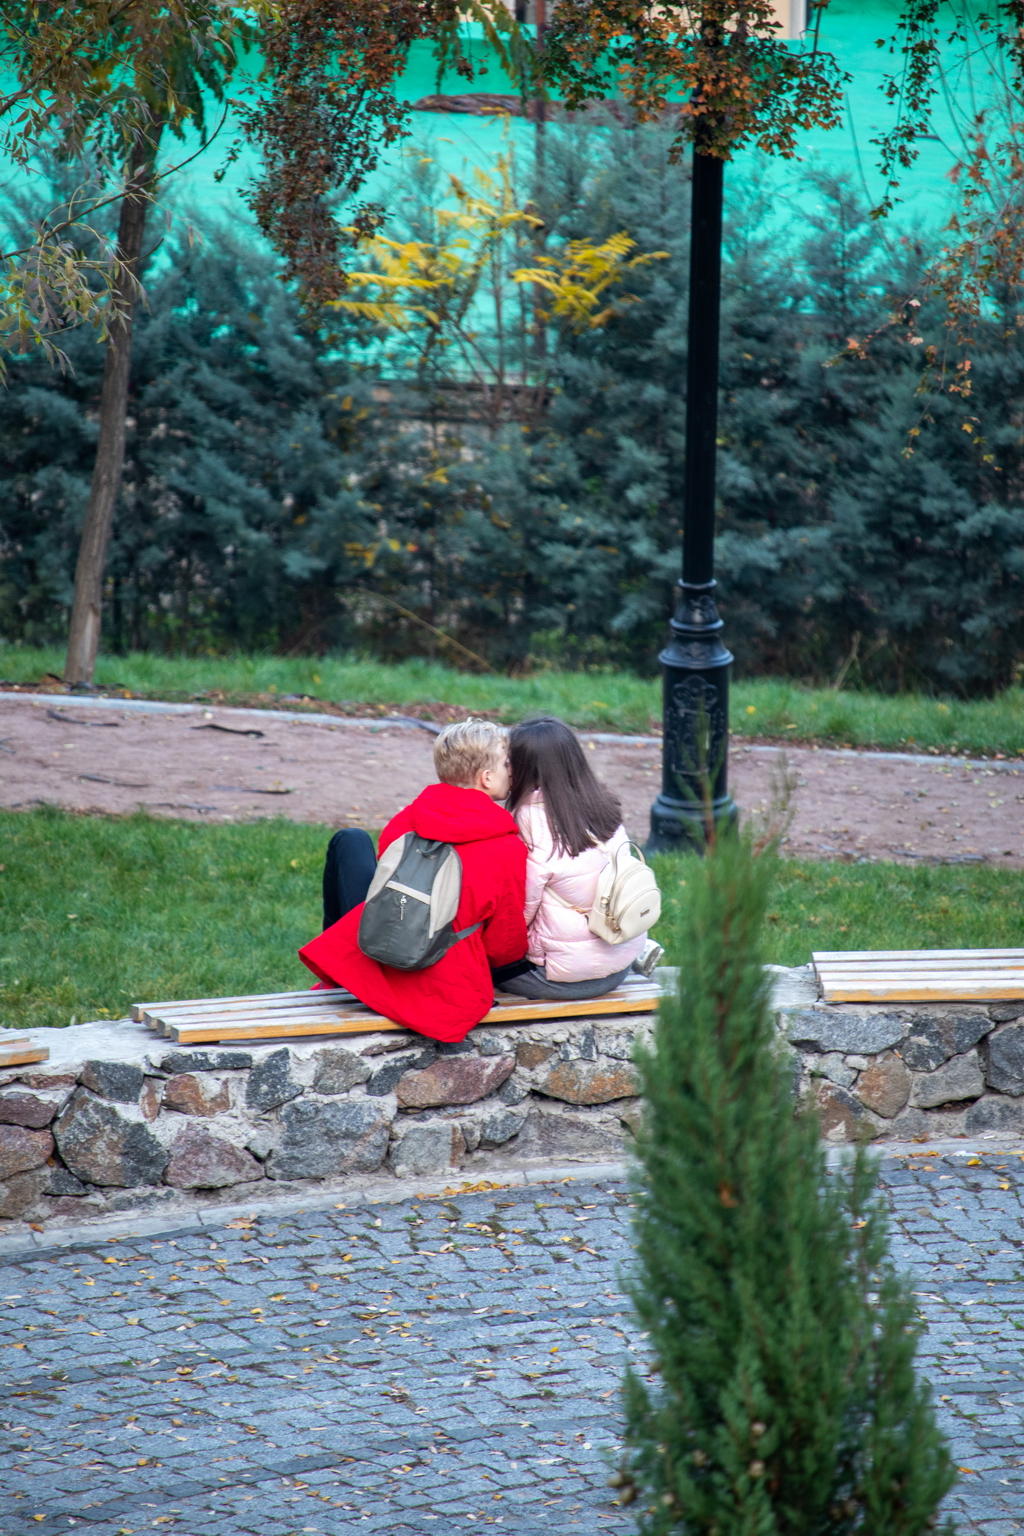 Fellow teen kisses girl on bench - Ukraine, Odessa, 11,06,2020